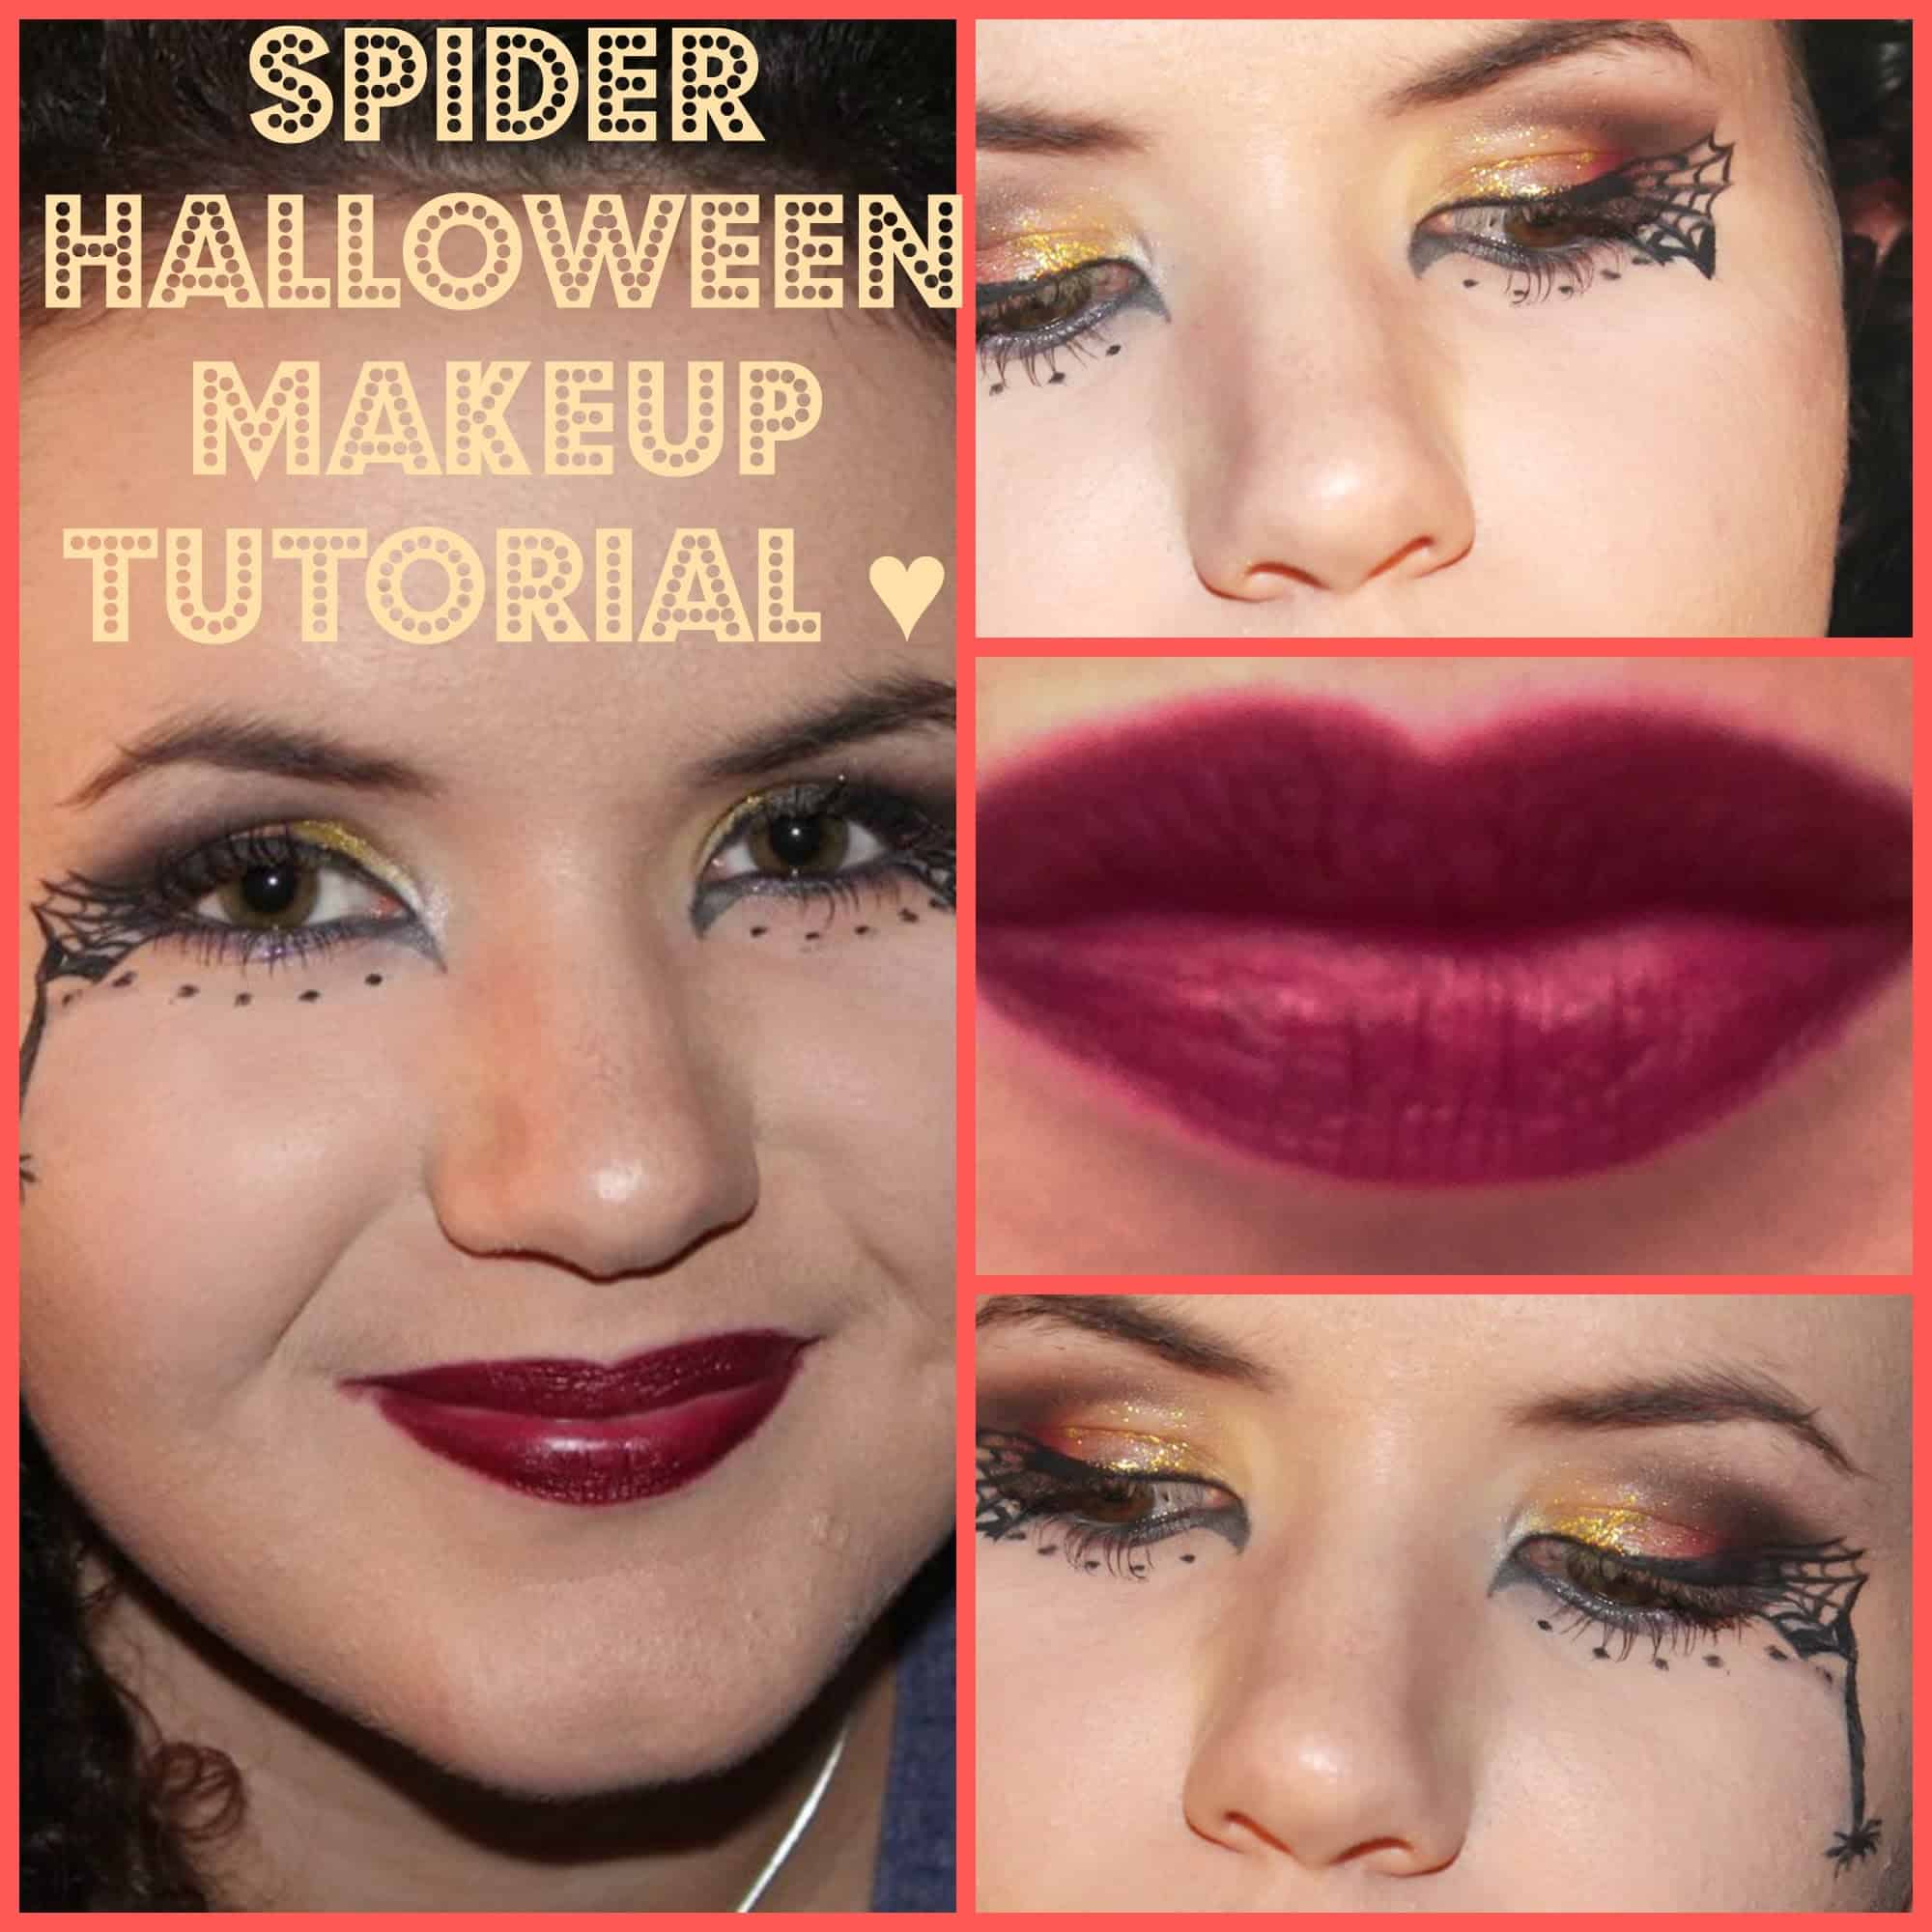 Spider Halloween makeup